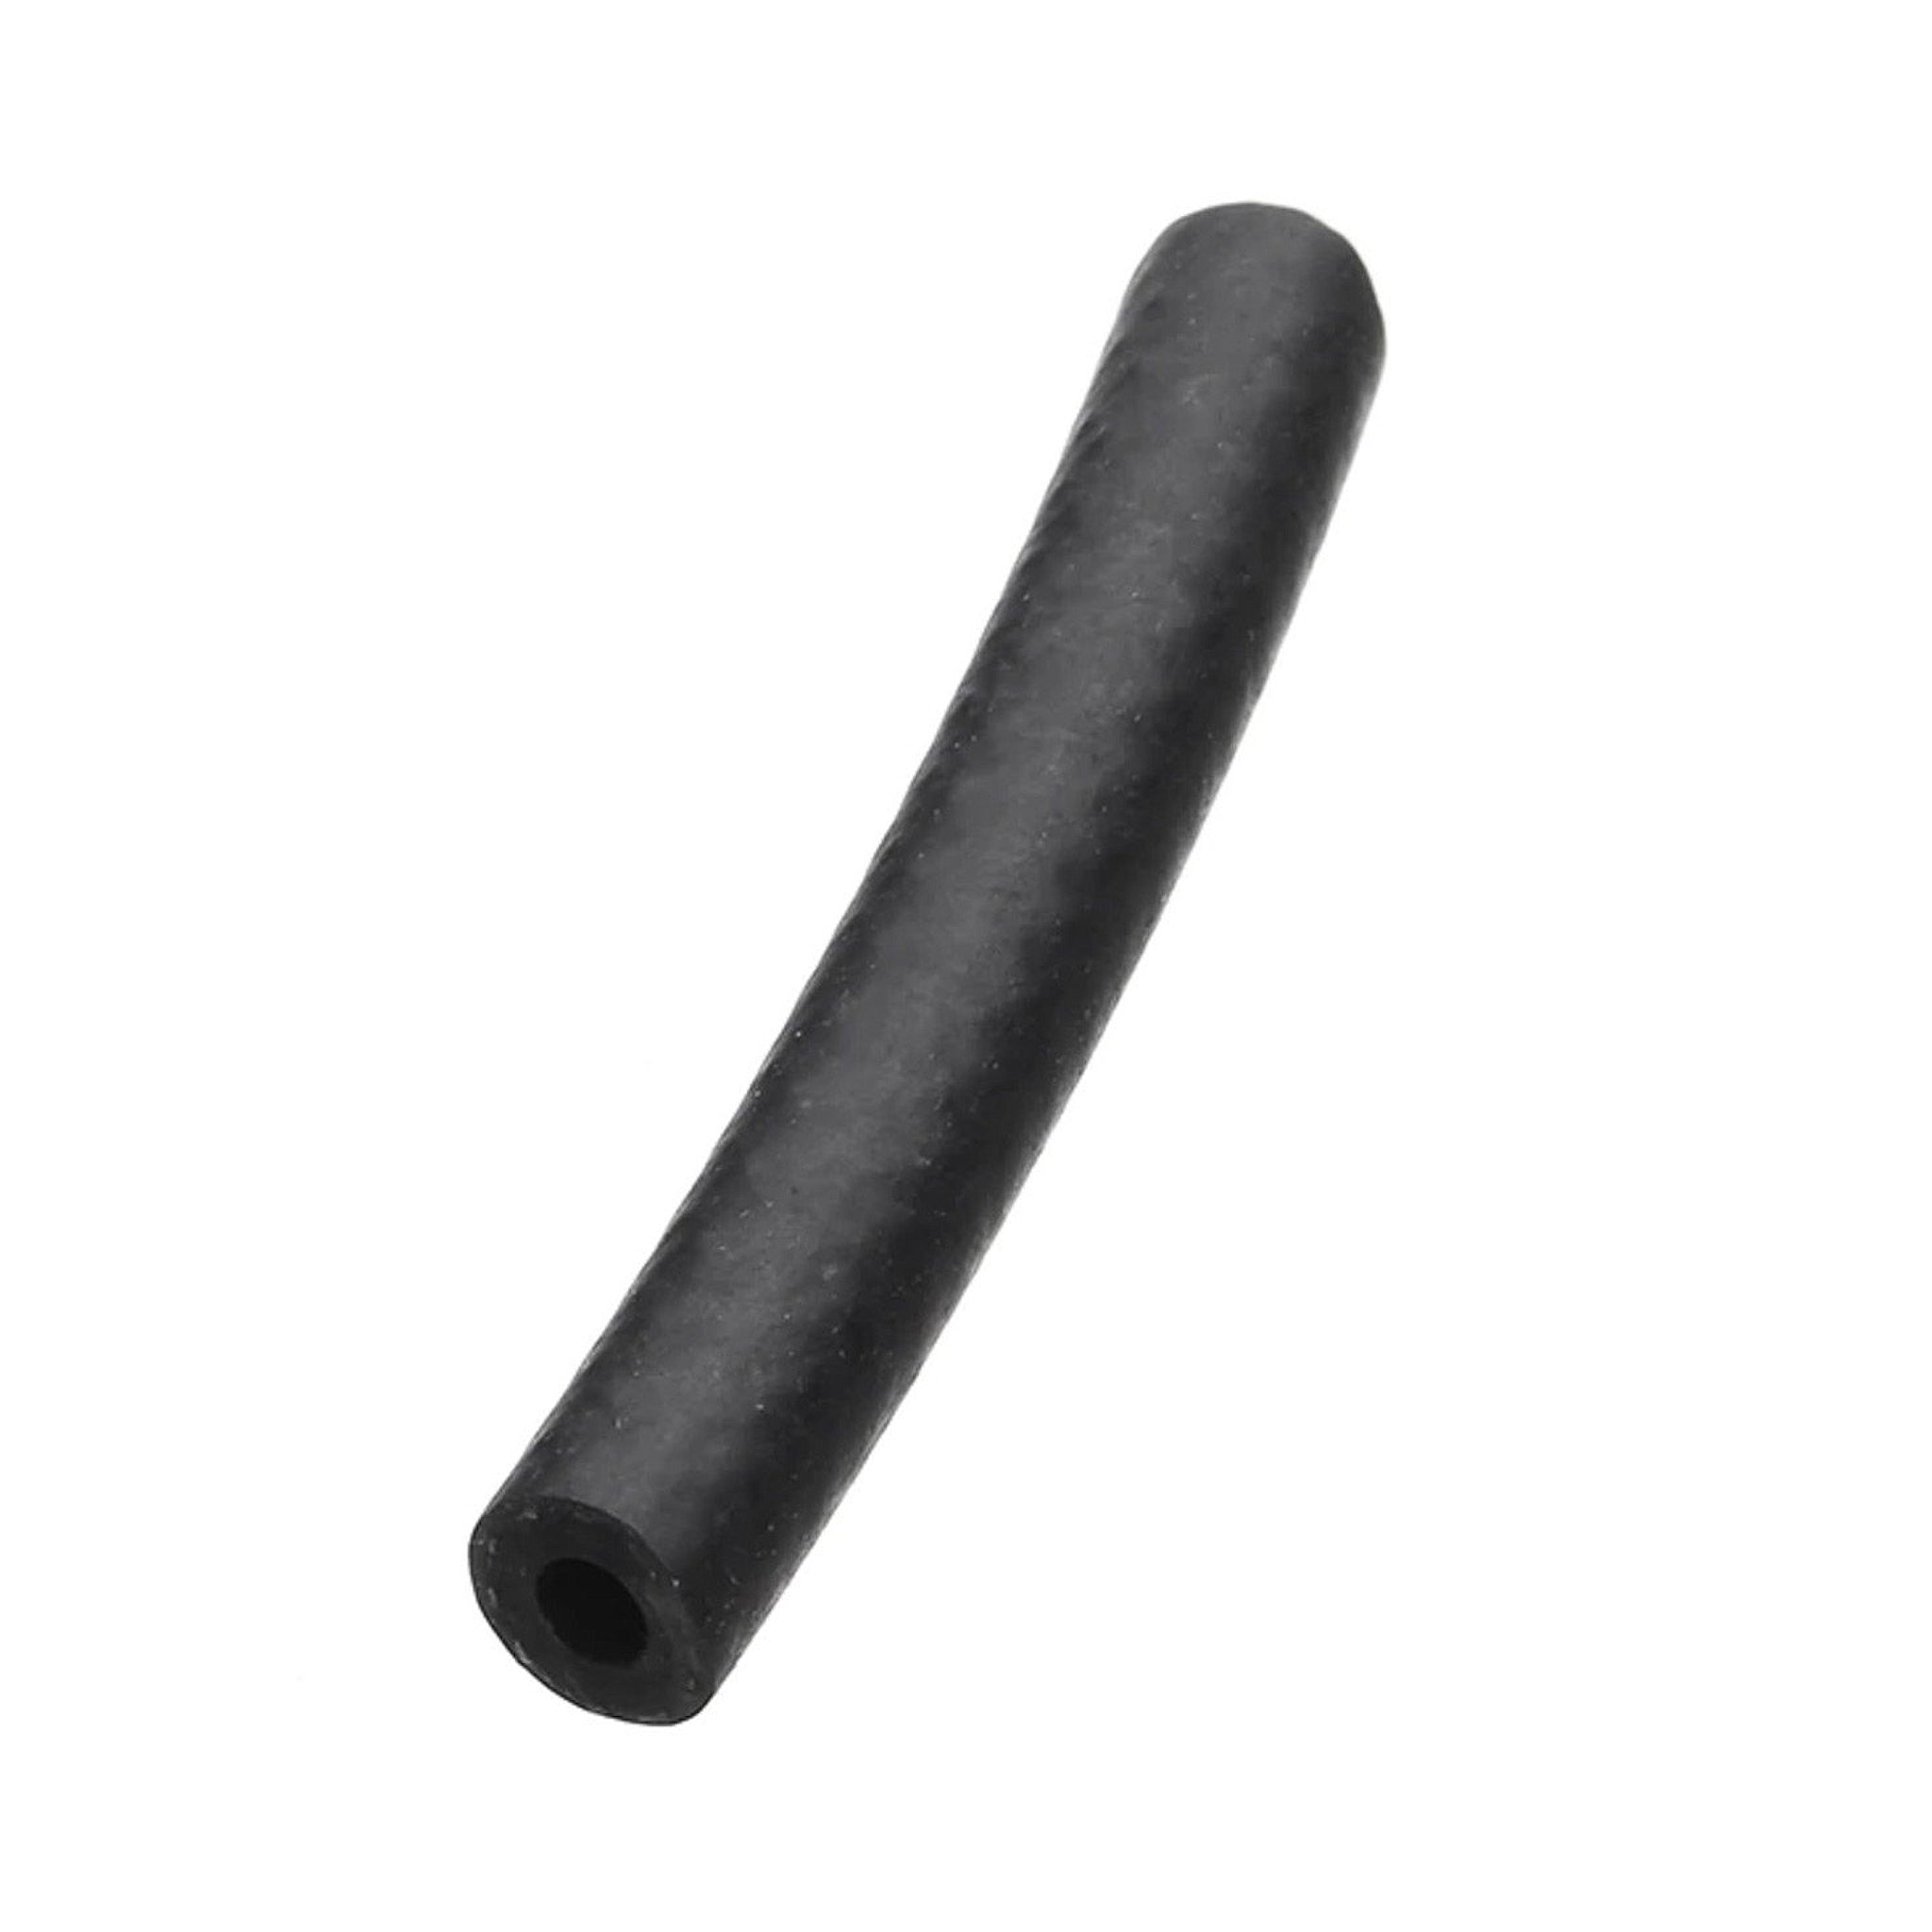 Fuel Hose Sleeve - Reinforced Rubber Black ID-Ø 5mm / OD-Ø 10.8mm